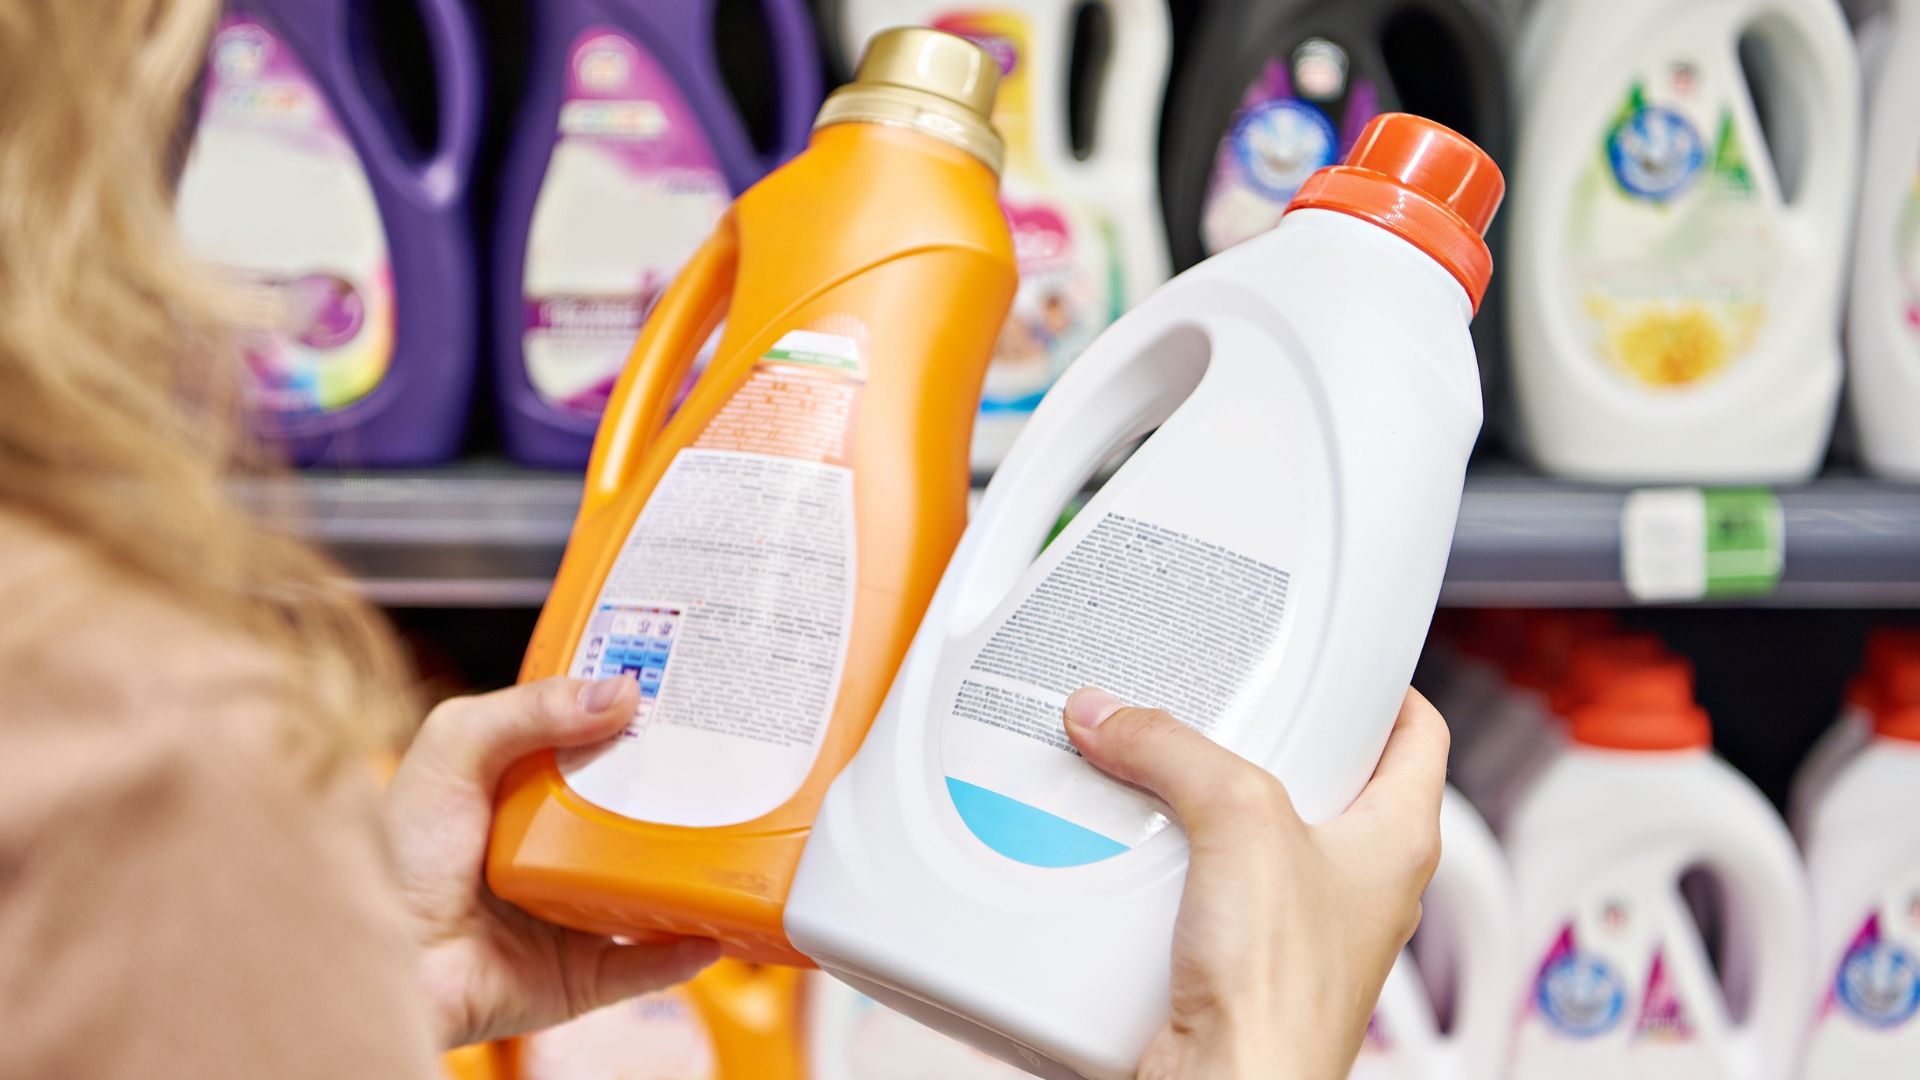 Imagen de detergentes por nota sobre llegada de nueva marca a Colombia